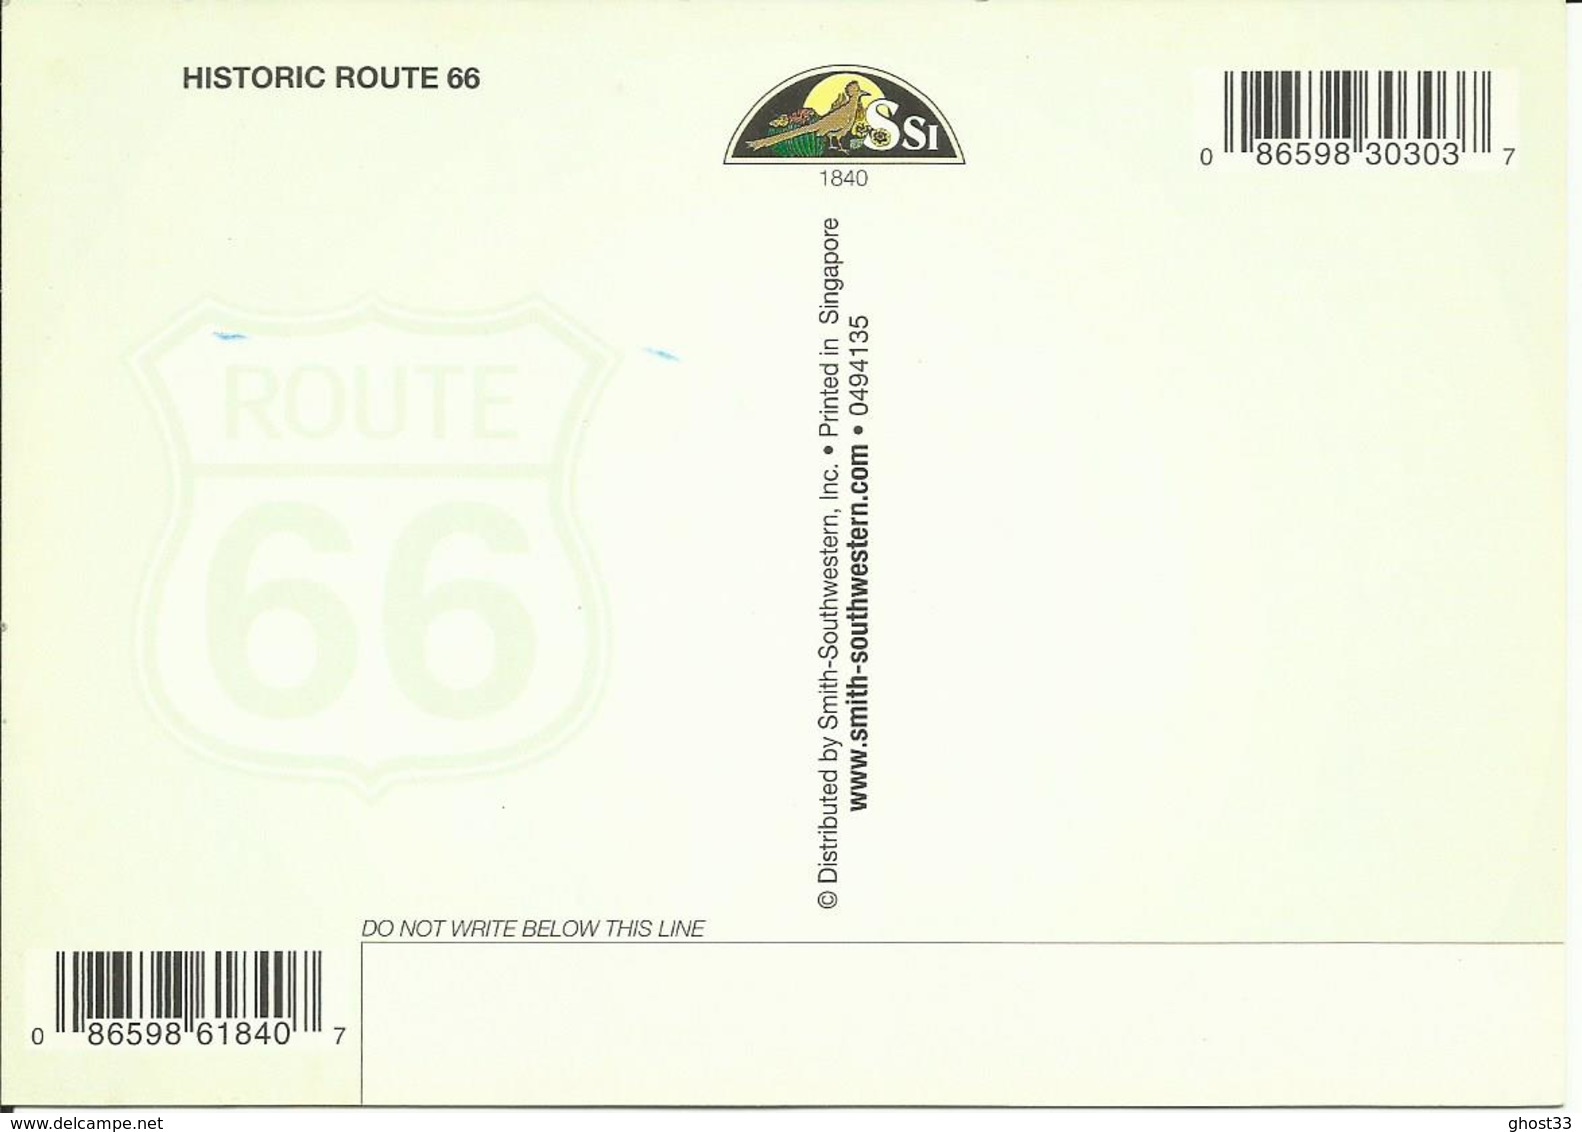 CARTE POSTALE - ÉTATS-UNIS - UNITED STATES - HISTORIC ROUTE 66 - Route '66'